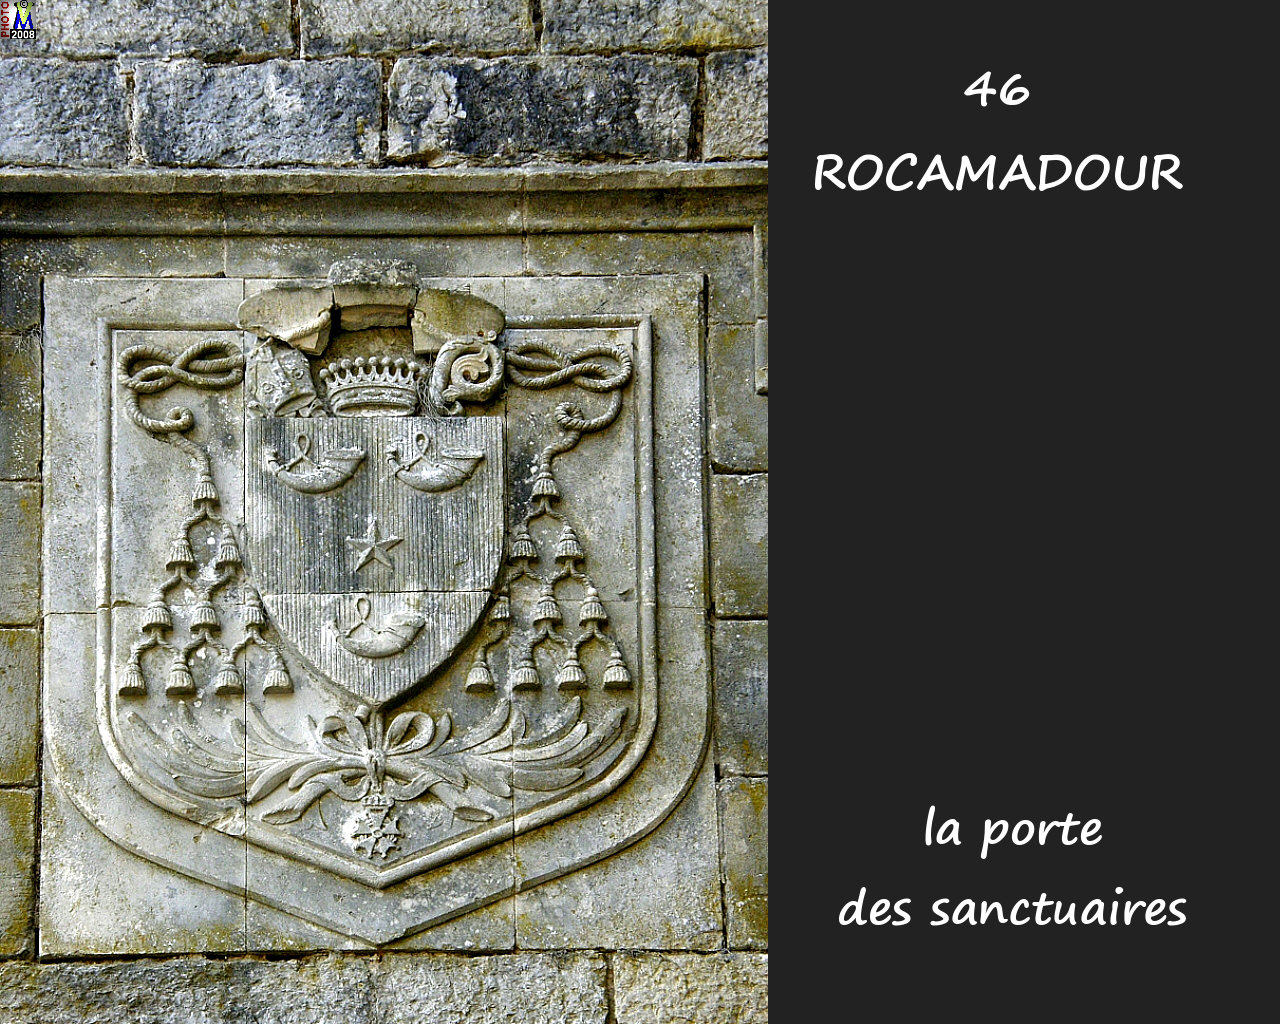 46ROCAMADOUR_sanctuaires_102.jpg